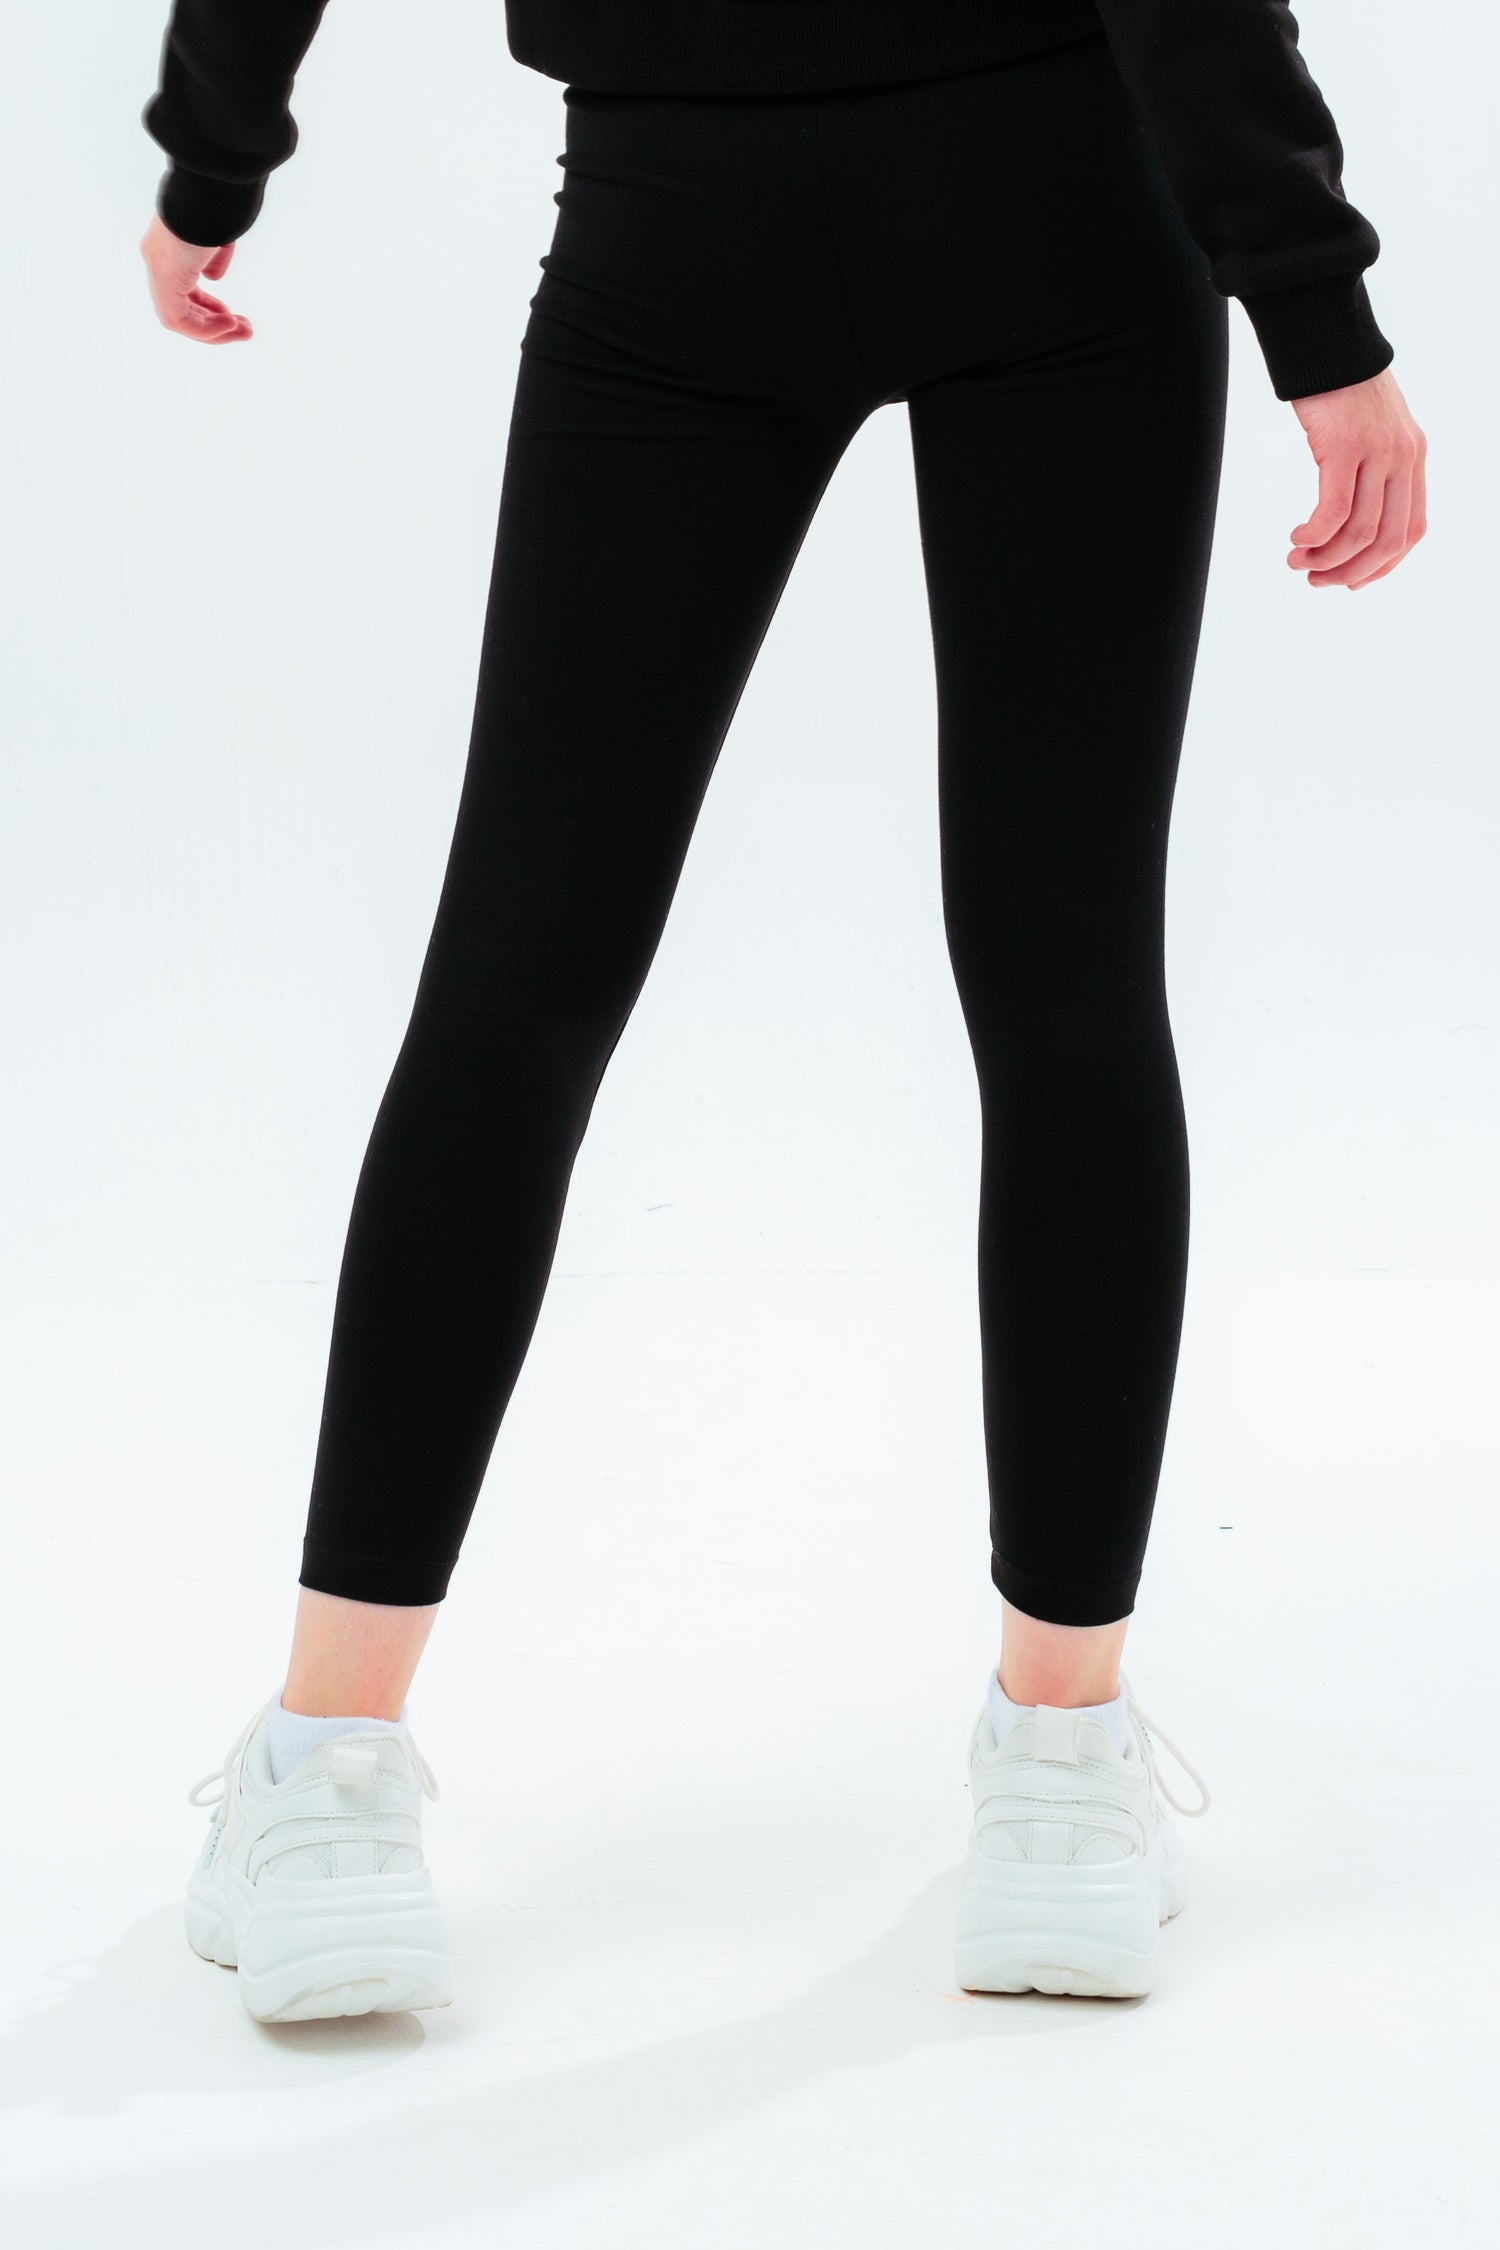 Topshop Black Long Leggings - 2  Long leggings, Topshop, Leggings